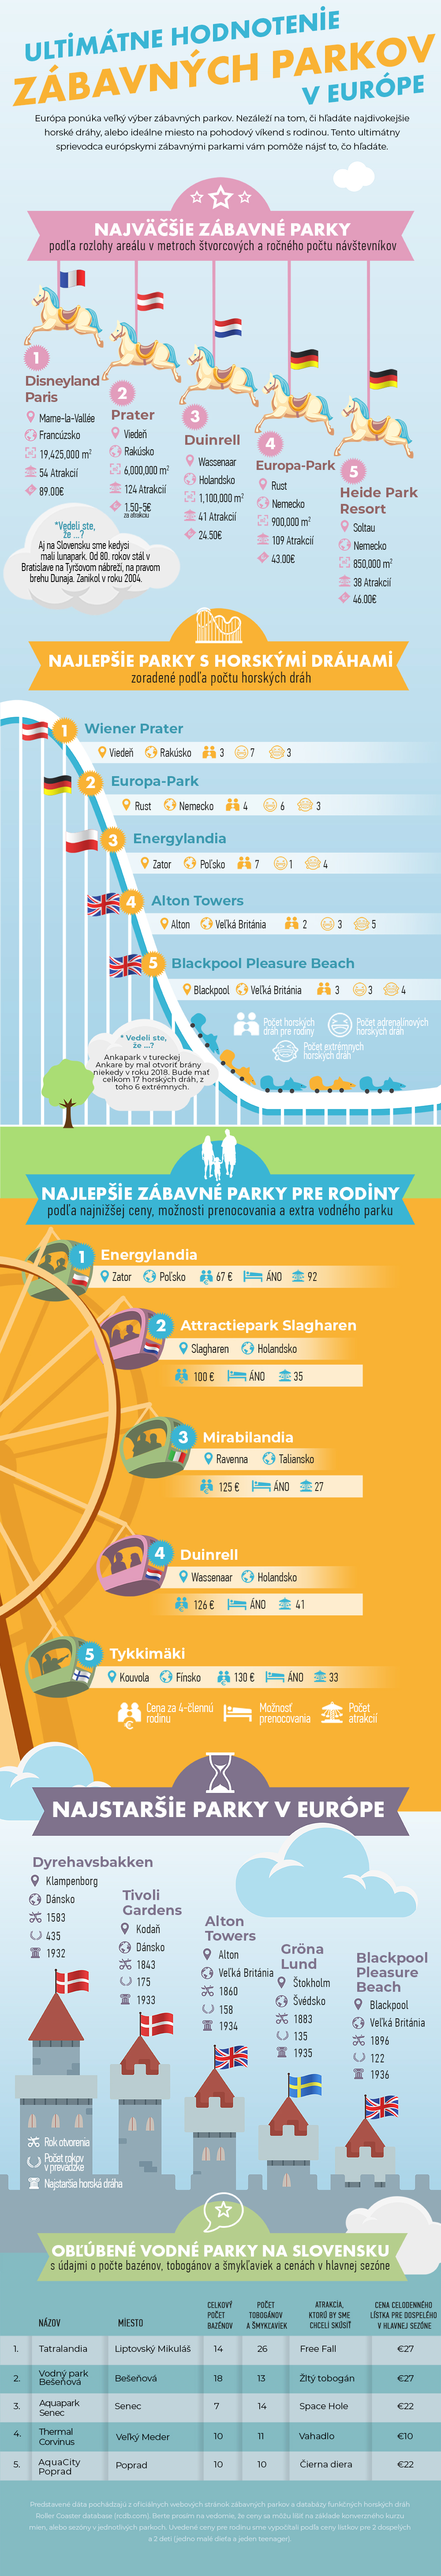 Ultimátne hodnotenie zábavných parkov v Európe - infografika